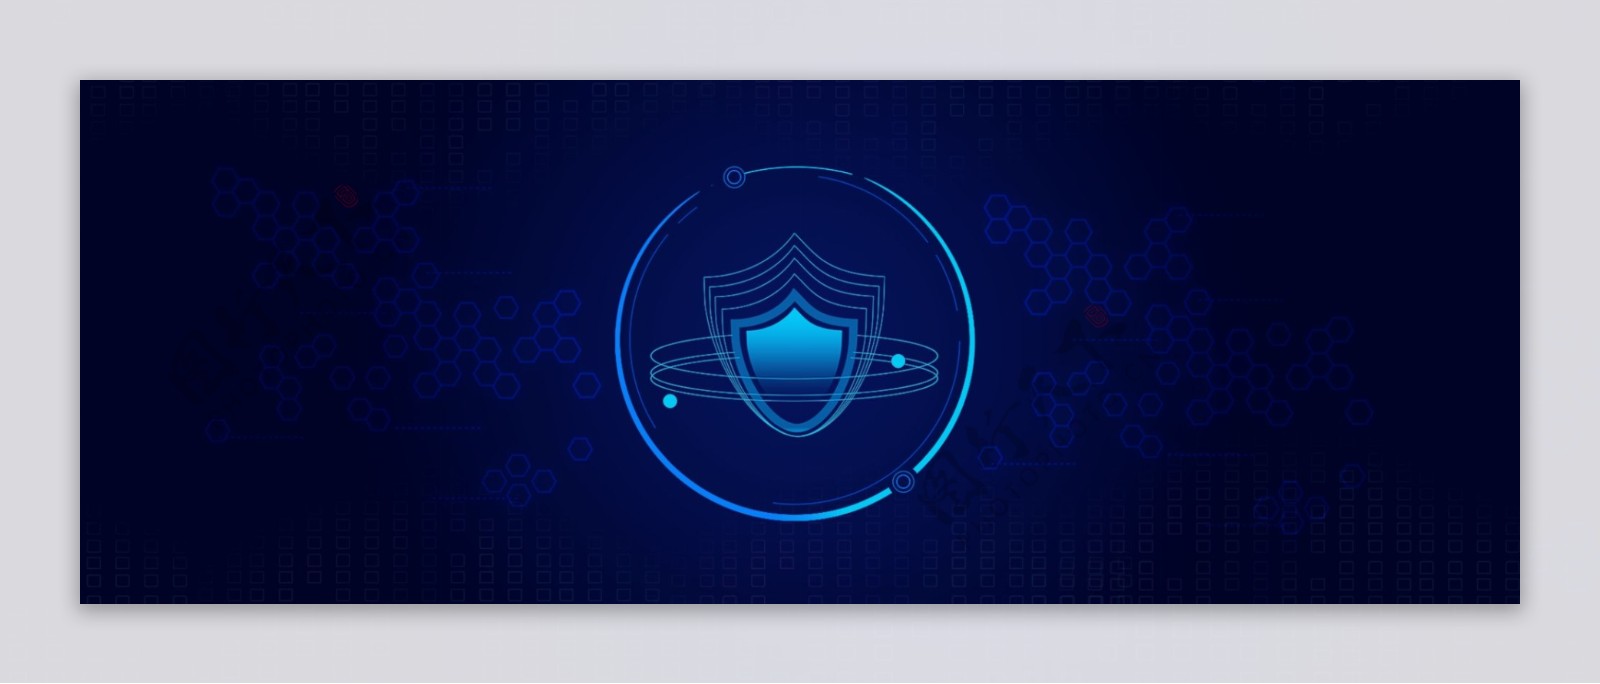 蓝色科技网络安全护盾